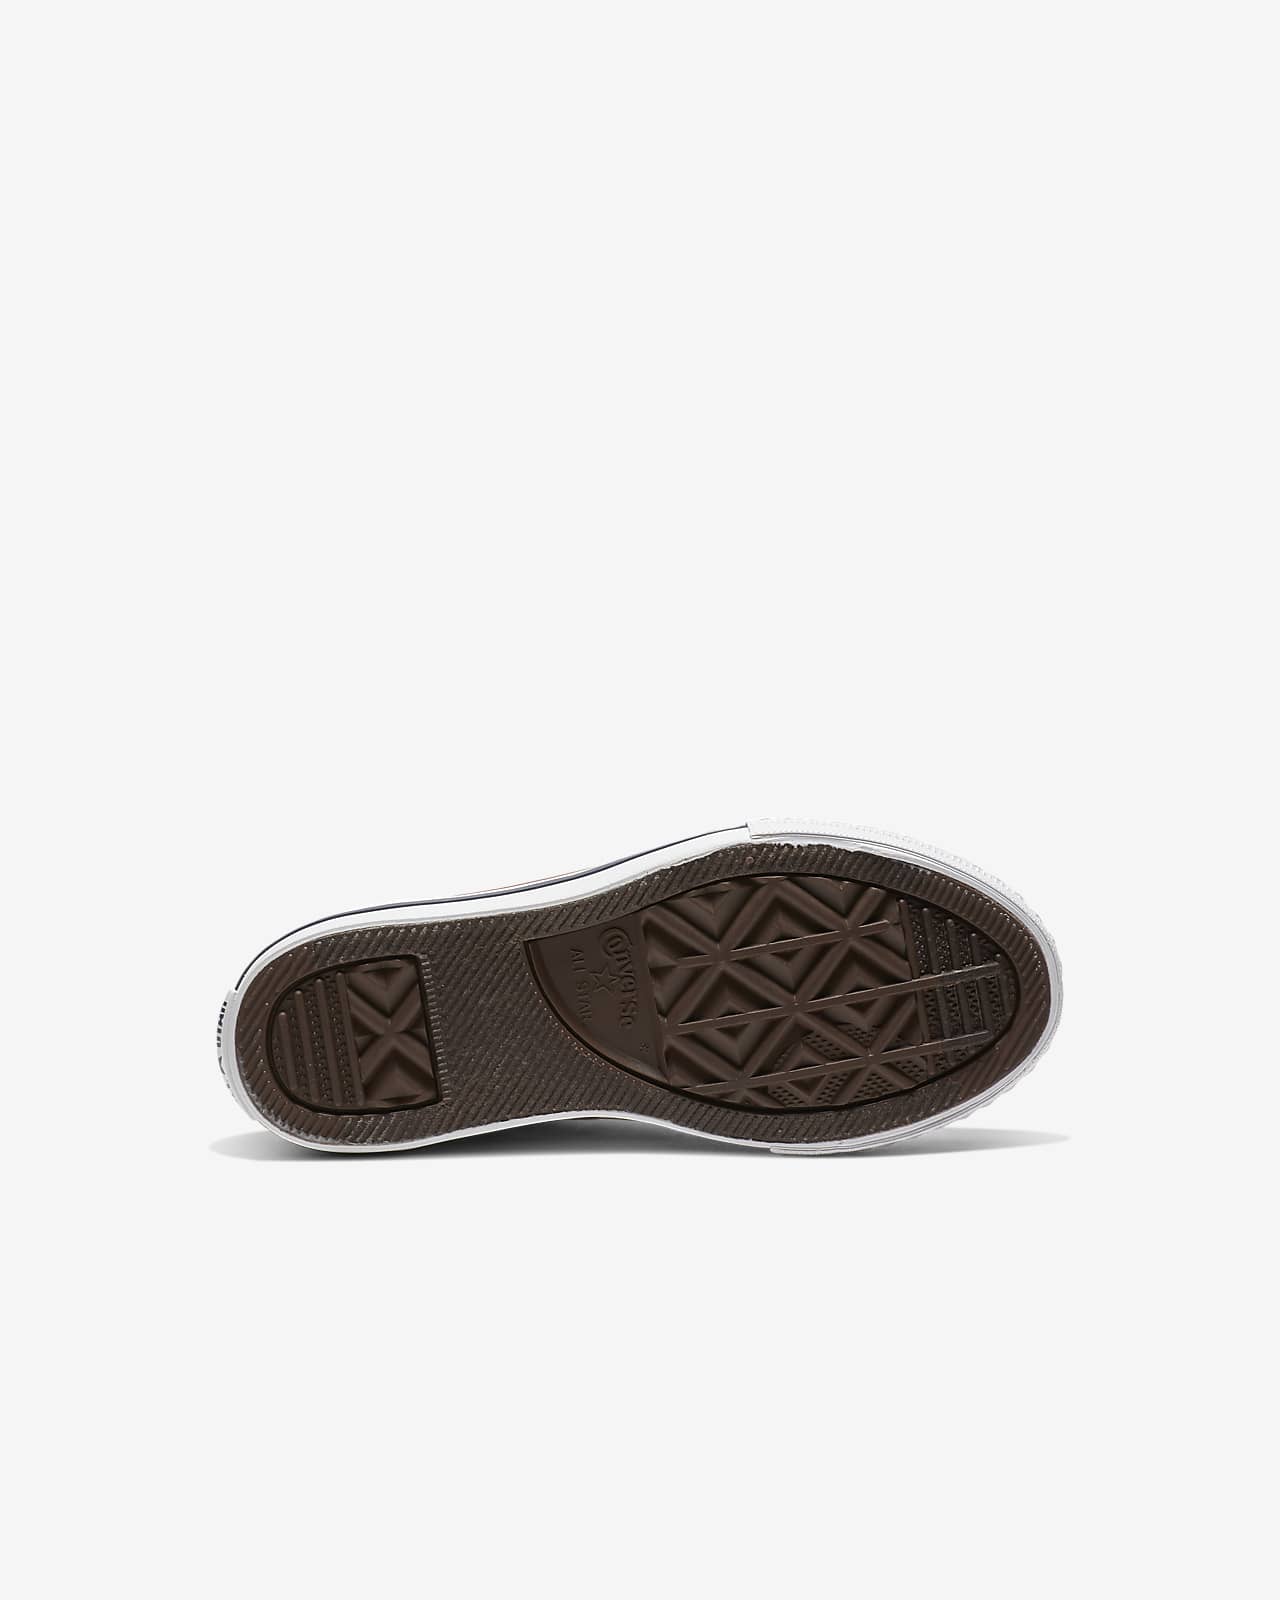 Calzado para niños de talla pequeña Converse Chuck All de perfil (16,5-3Y). Nike.com